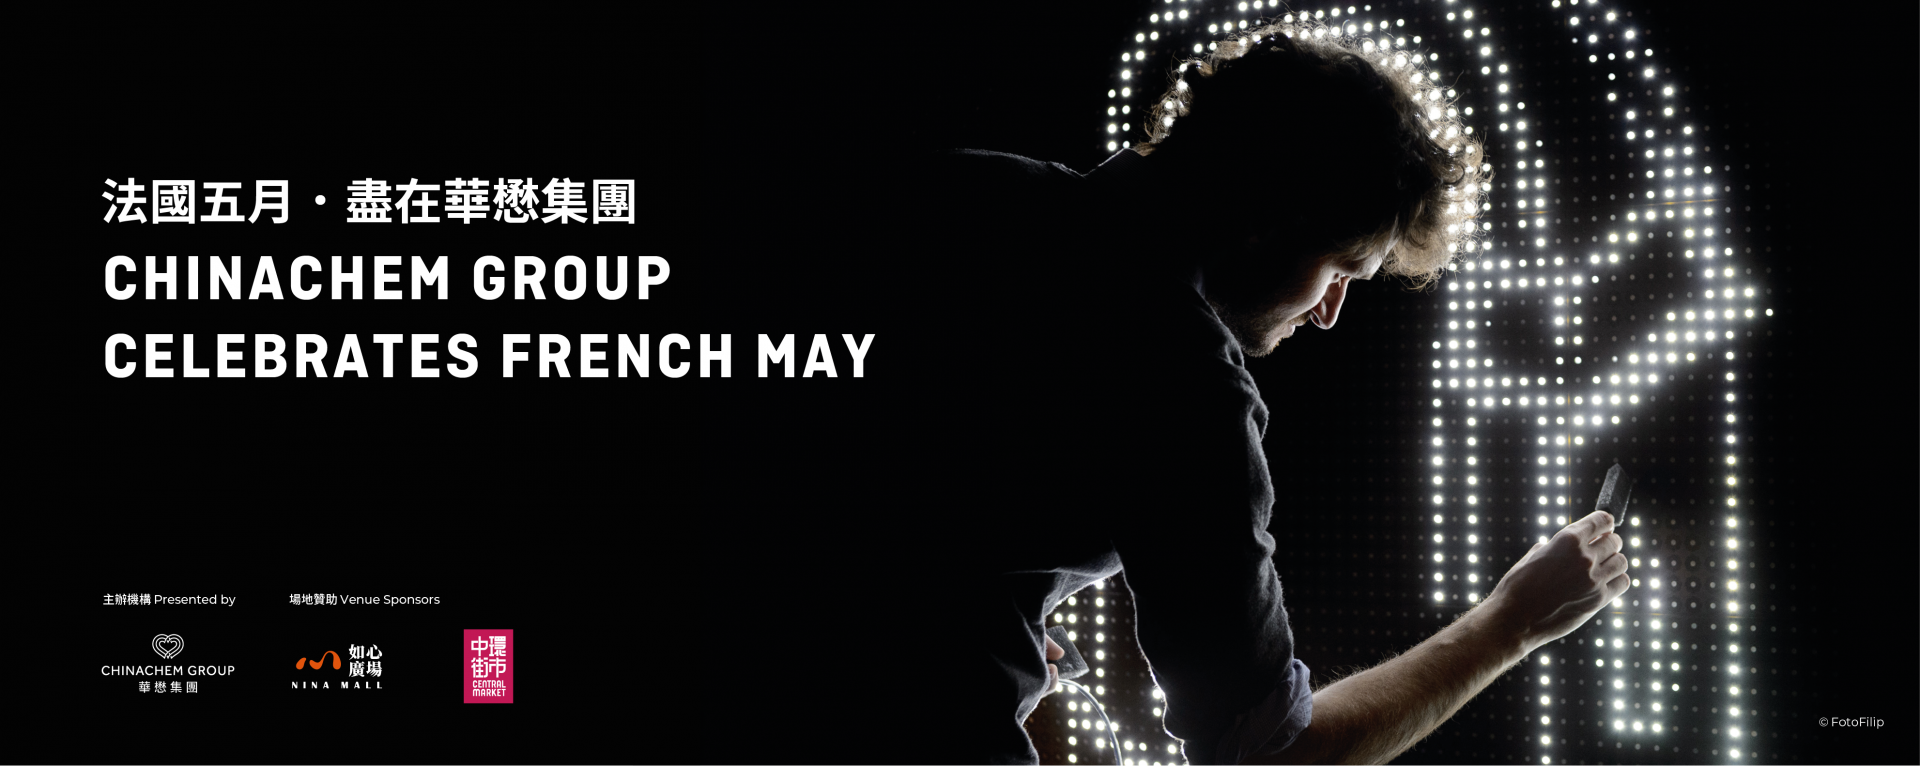 Chinachem Group Celebrates French May  